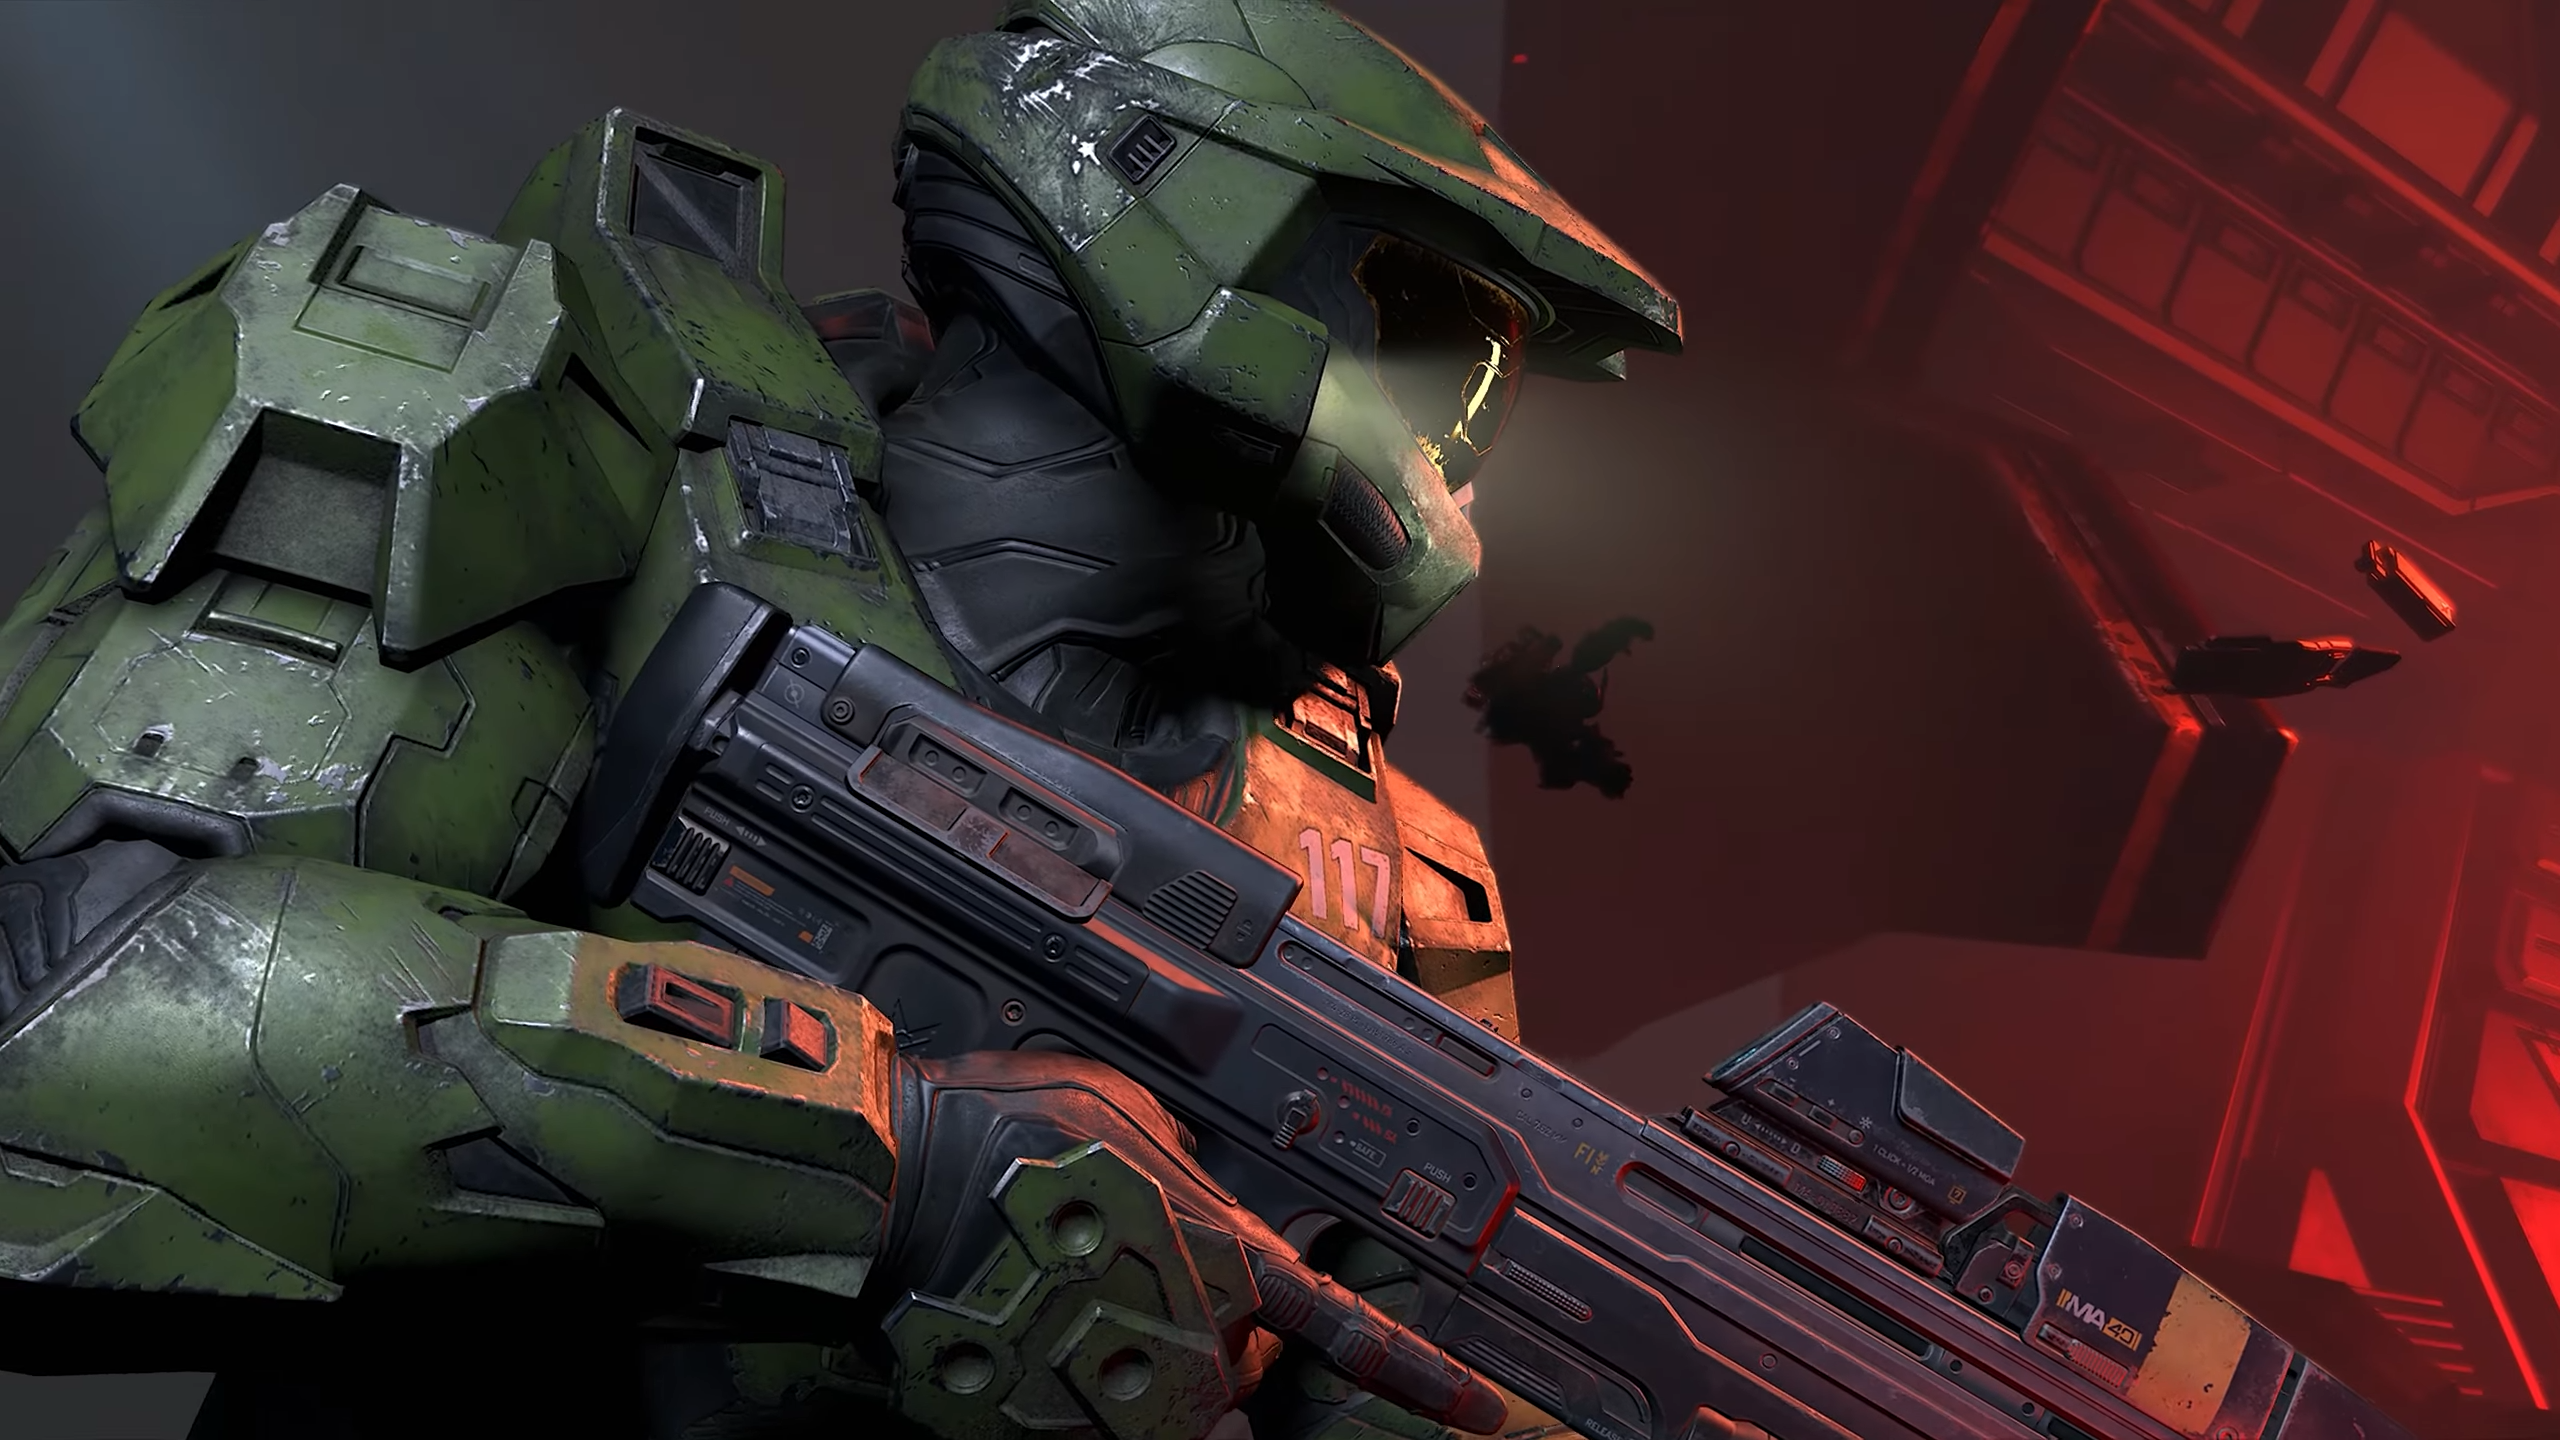 Поддержка LAN, куча настроек и рейтрейсинг после релиза — видео о Halo Infinite для PC